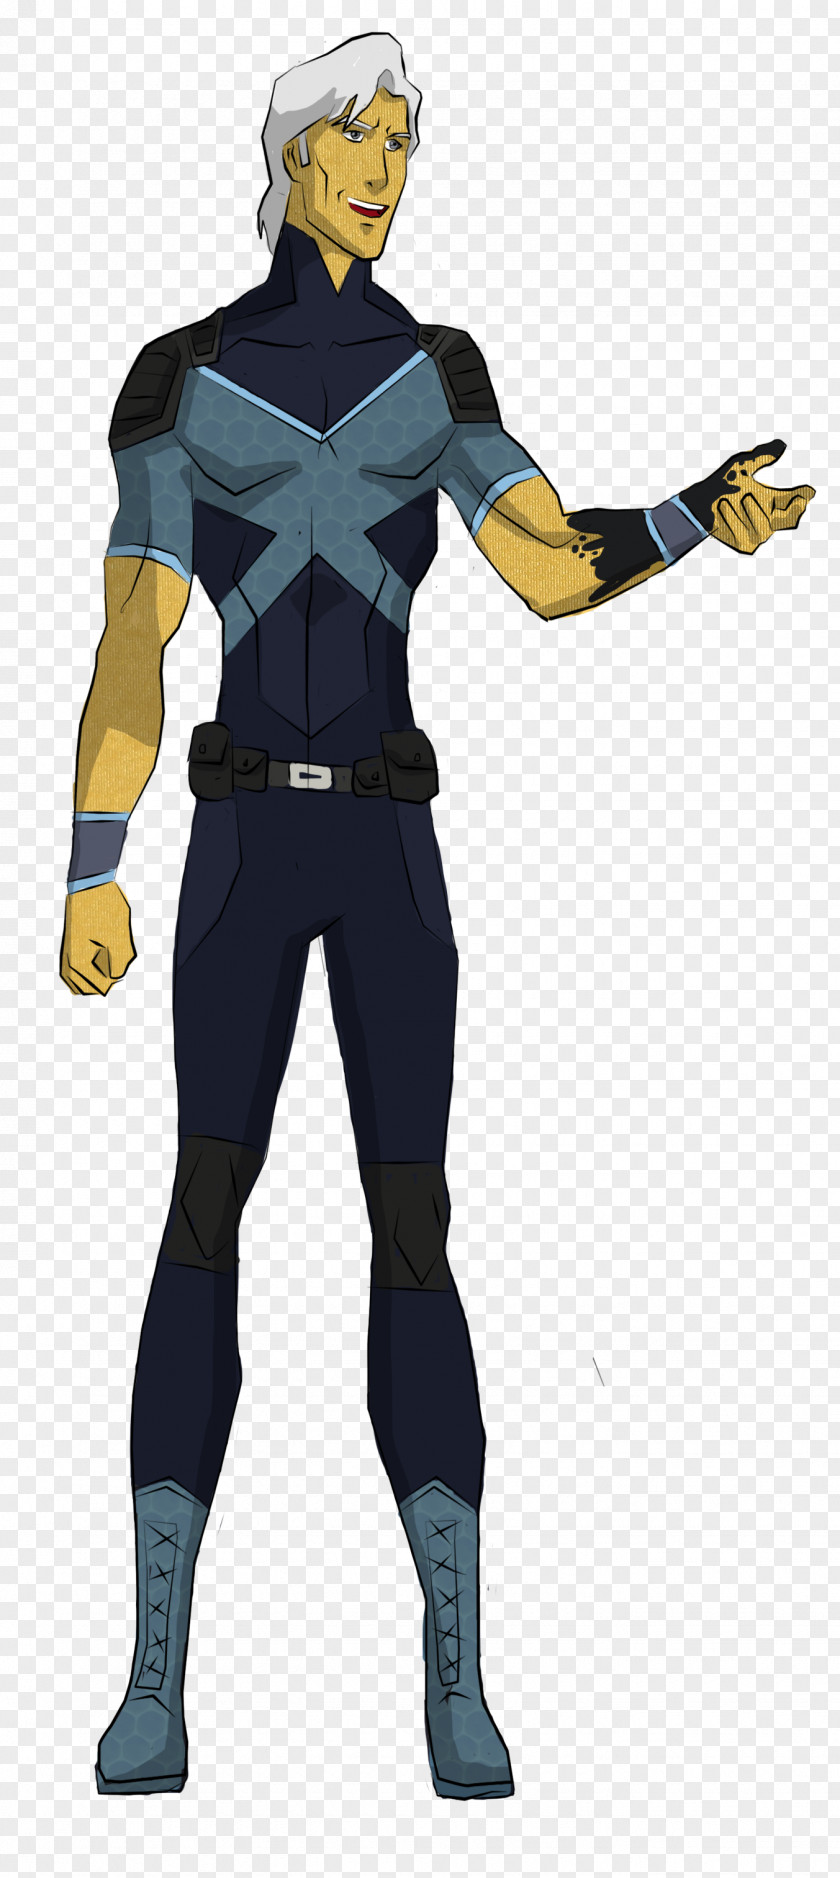 X-men X-Men Professor X Rogue Nightcrawler Cyclops PNG